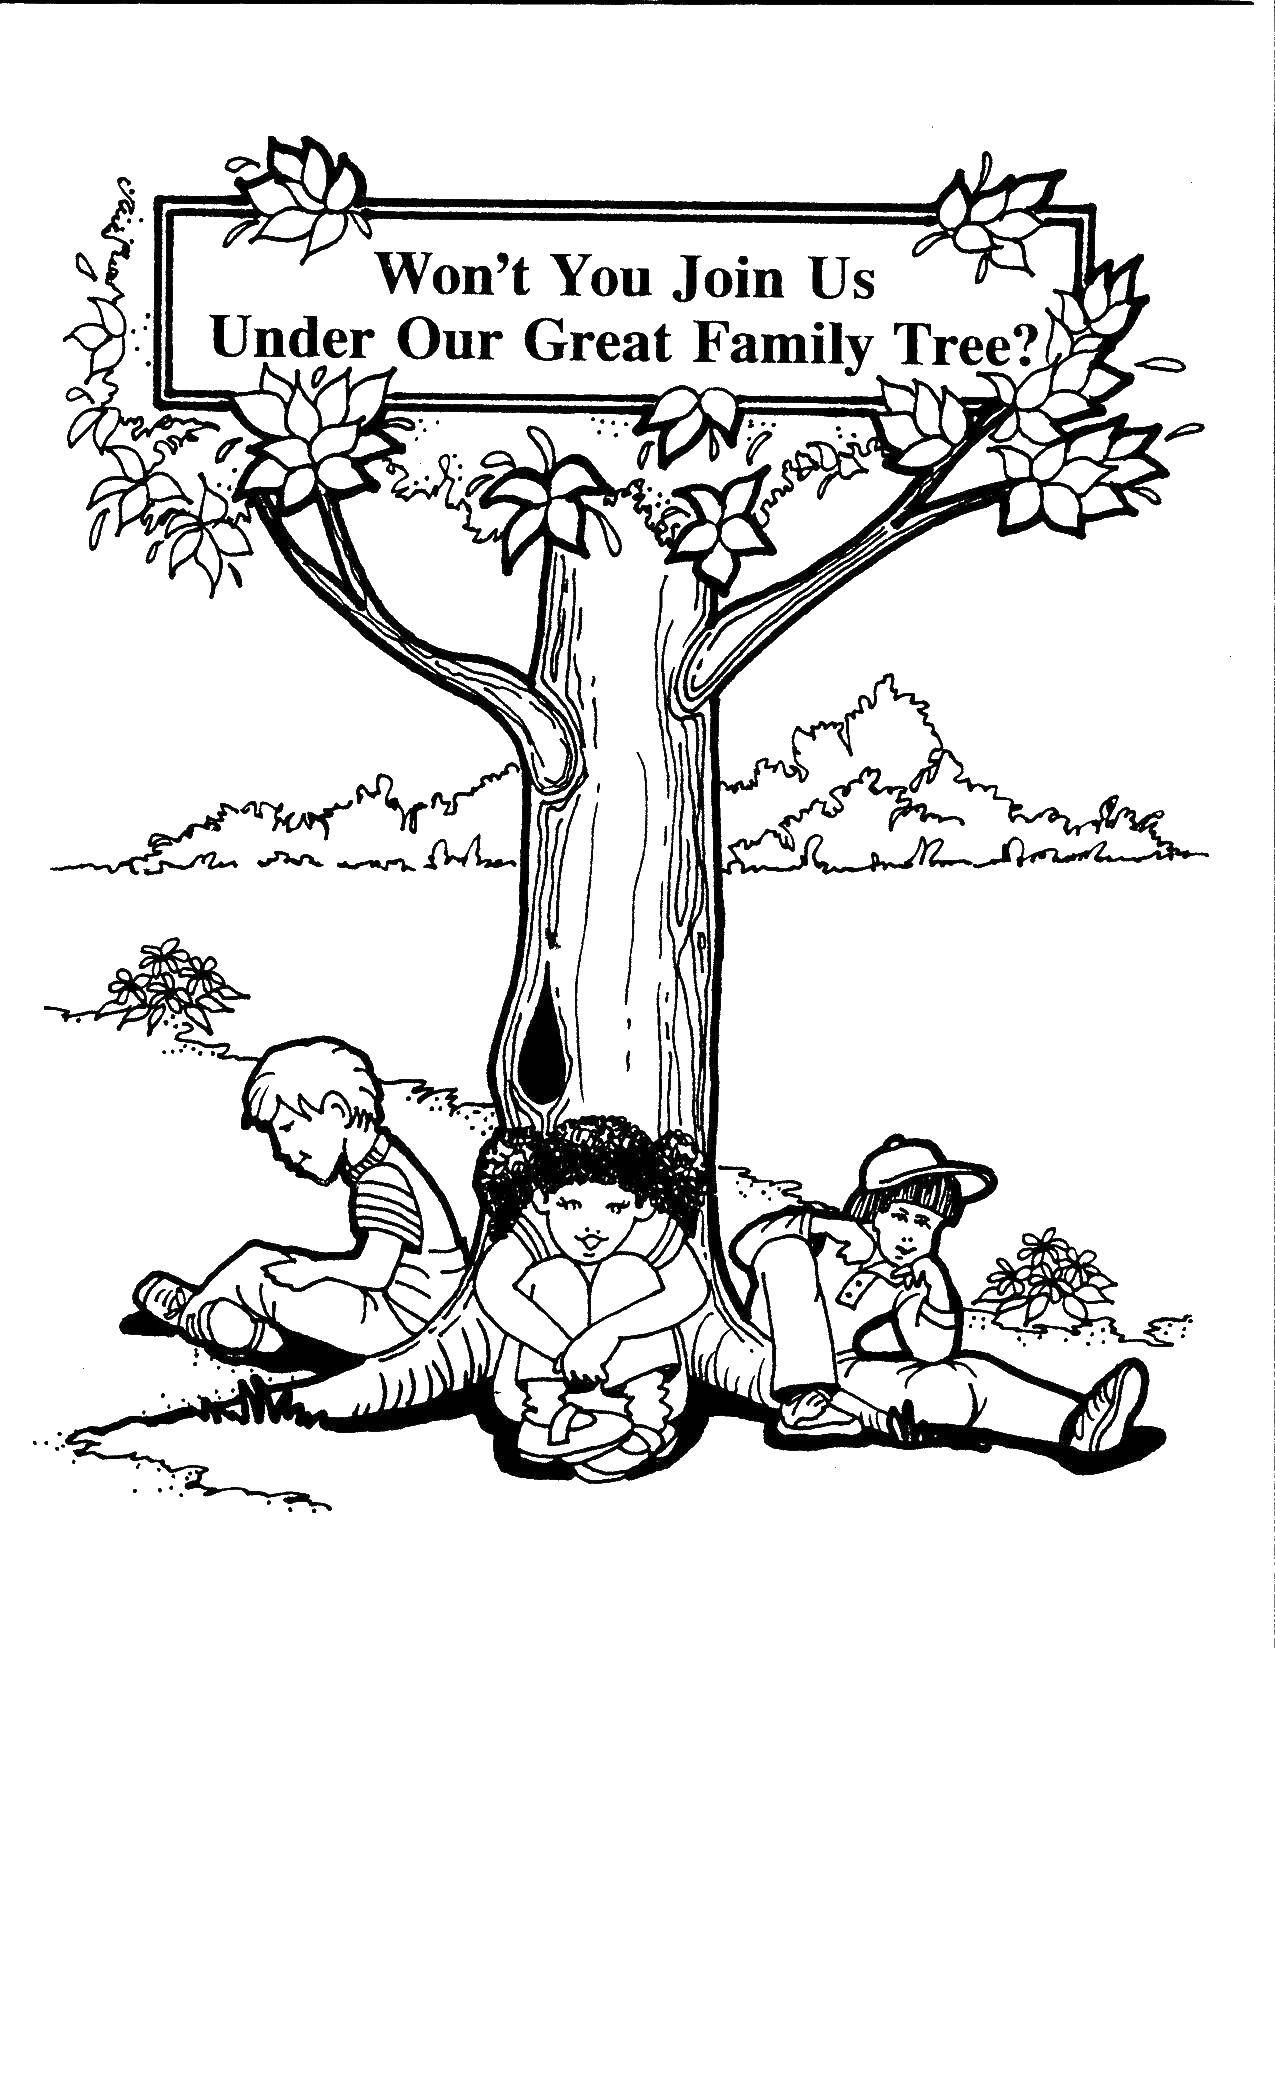 Опис: розмальовки  Діти сидять під деревом. Категорія: дерево. Теги:  дерево, діти.